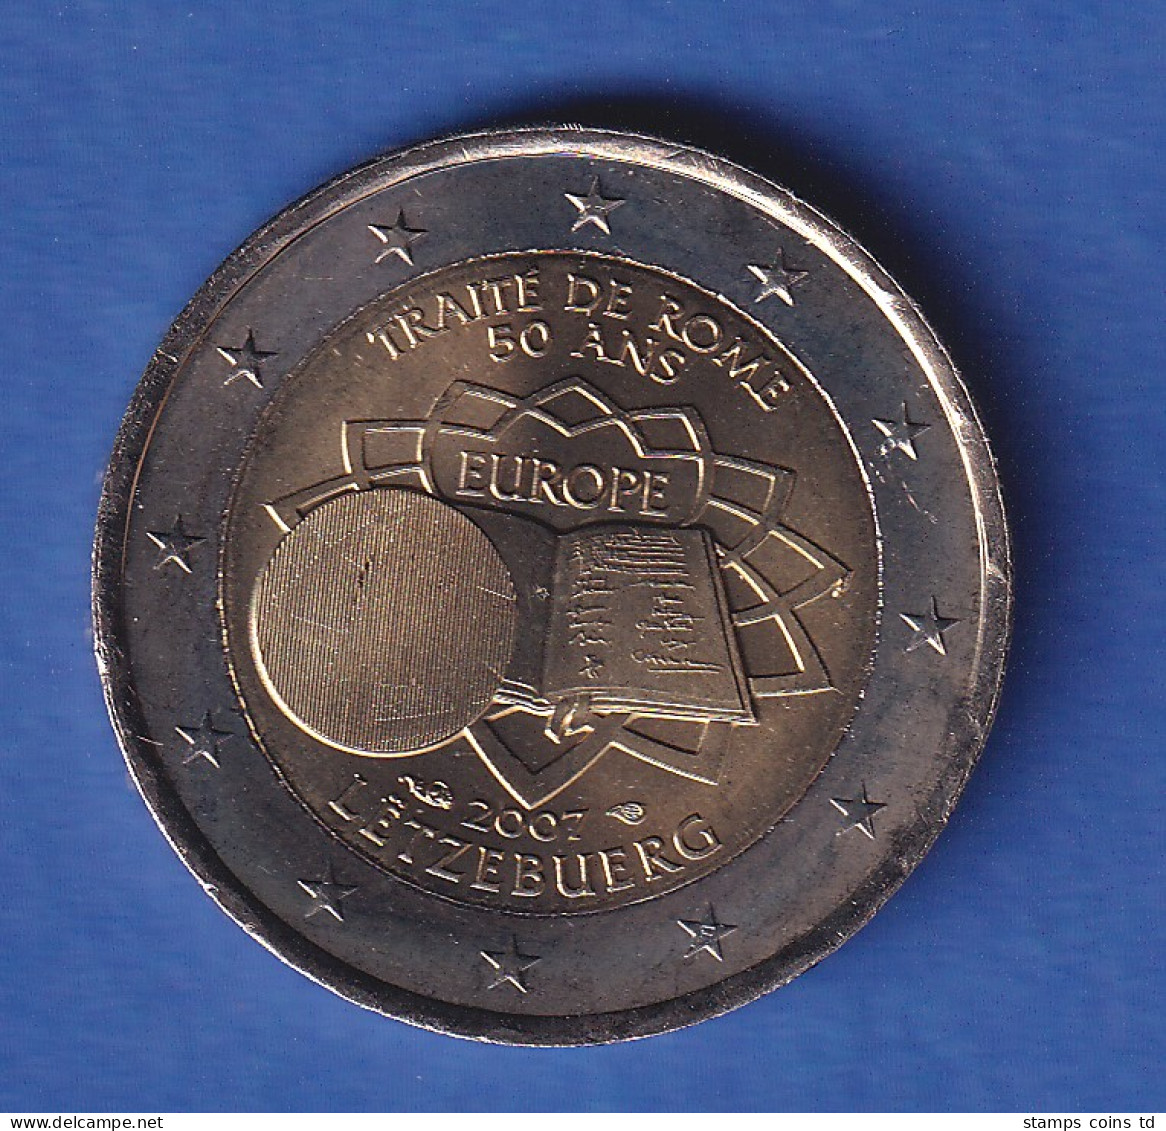 Luxemburg 2007 2-Euro-Sondermünze Römische Verträge Bankfr. Unzirk.  - Luxemburgo